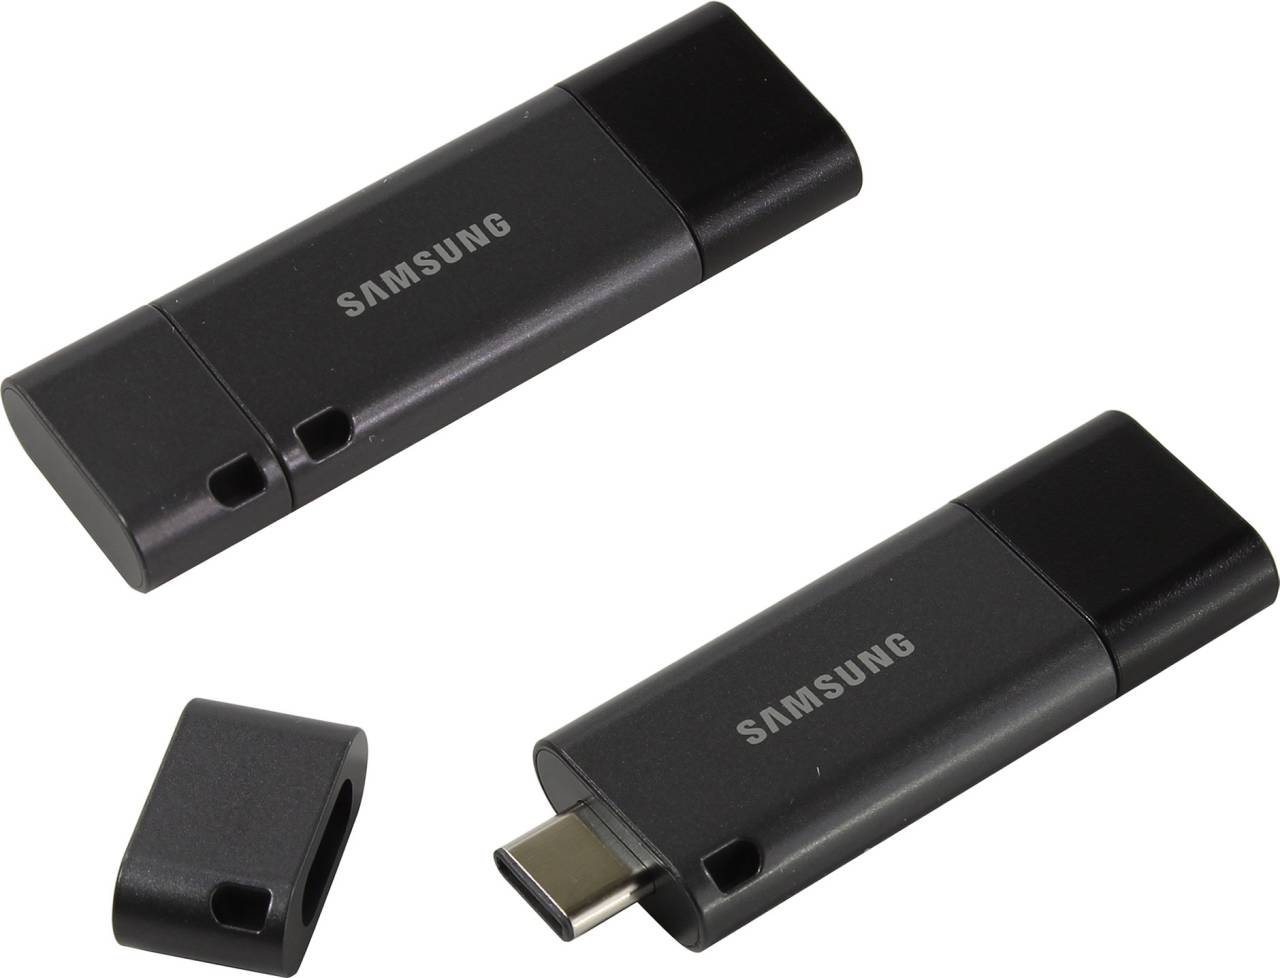   USB3.1/USB-C 64Gb Samsung [MUF-64DB/APC] (RTL)